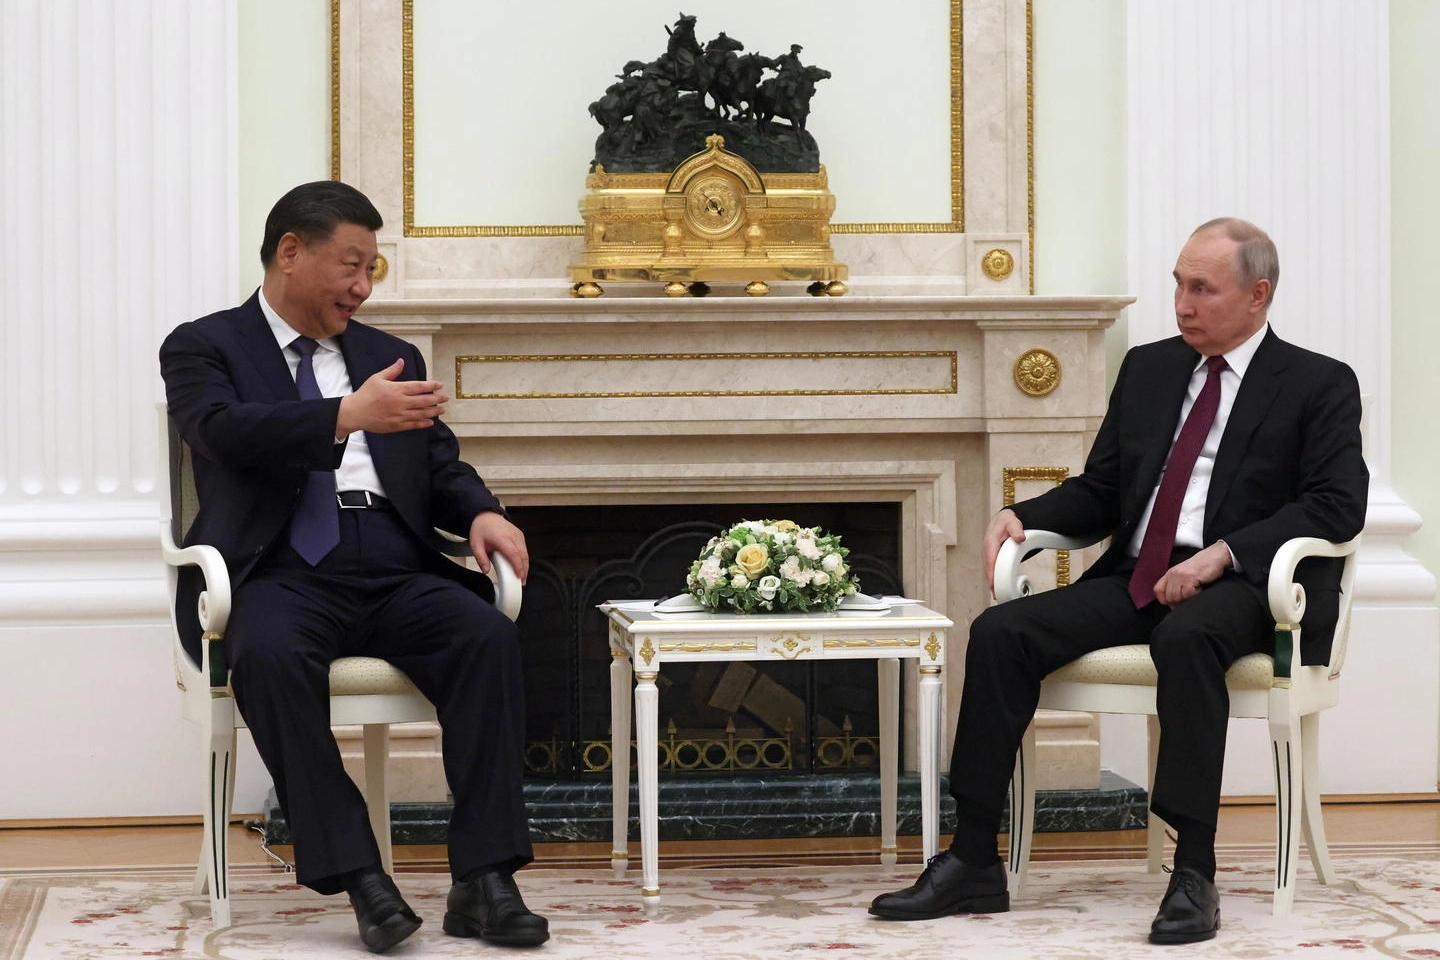 Xi Jinping e Vladimir Putin (Ansa)